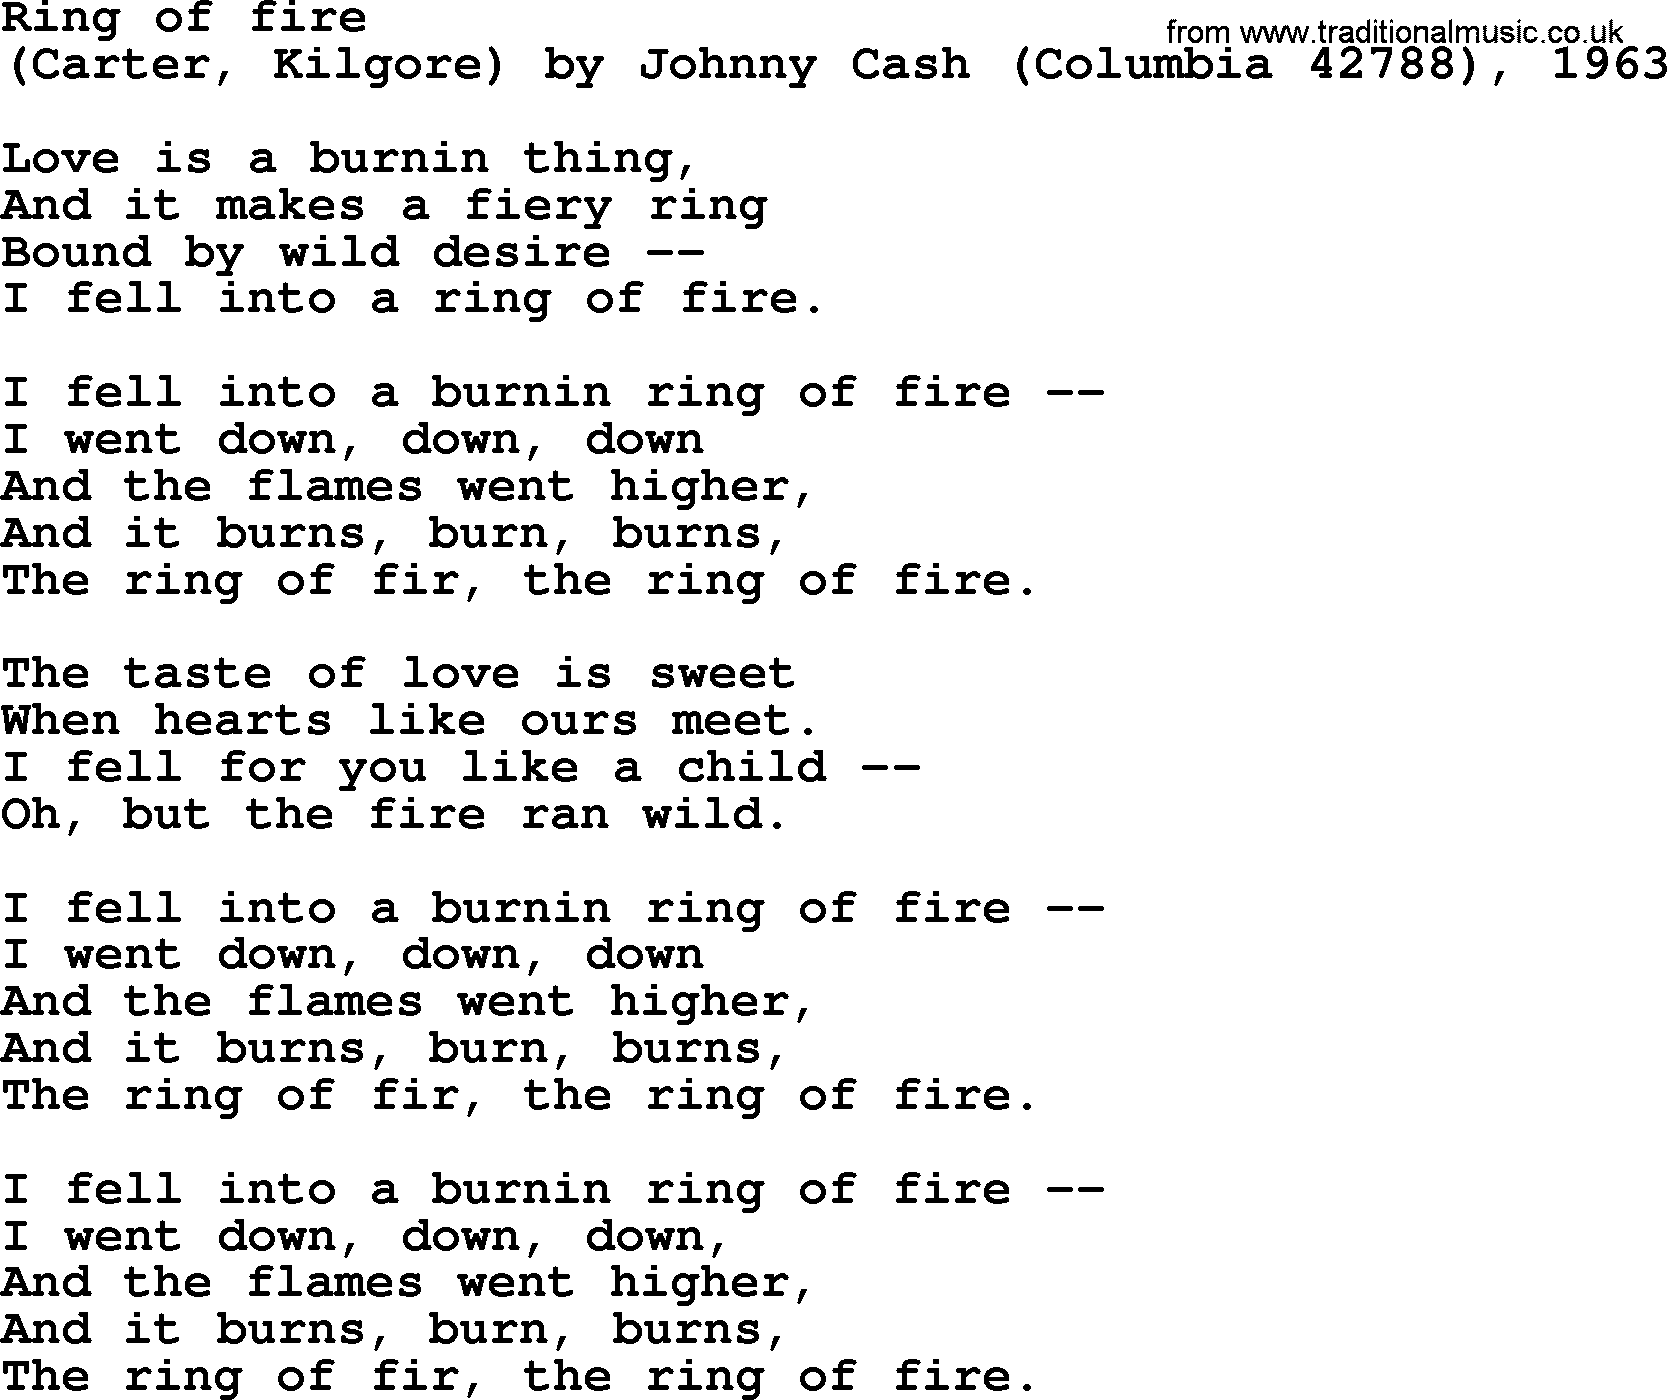 Bruce Springsteen song: Ring Of Fire lyrics